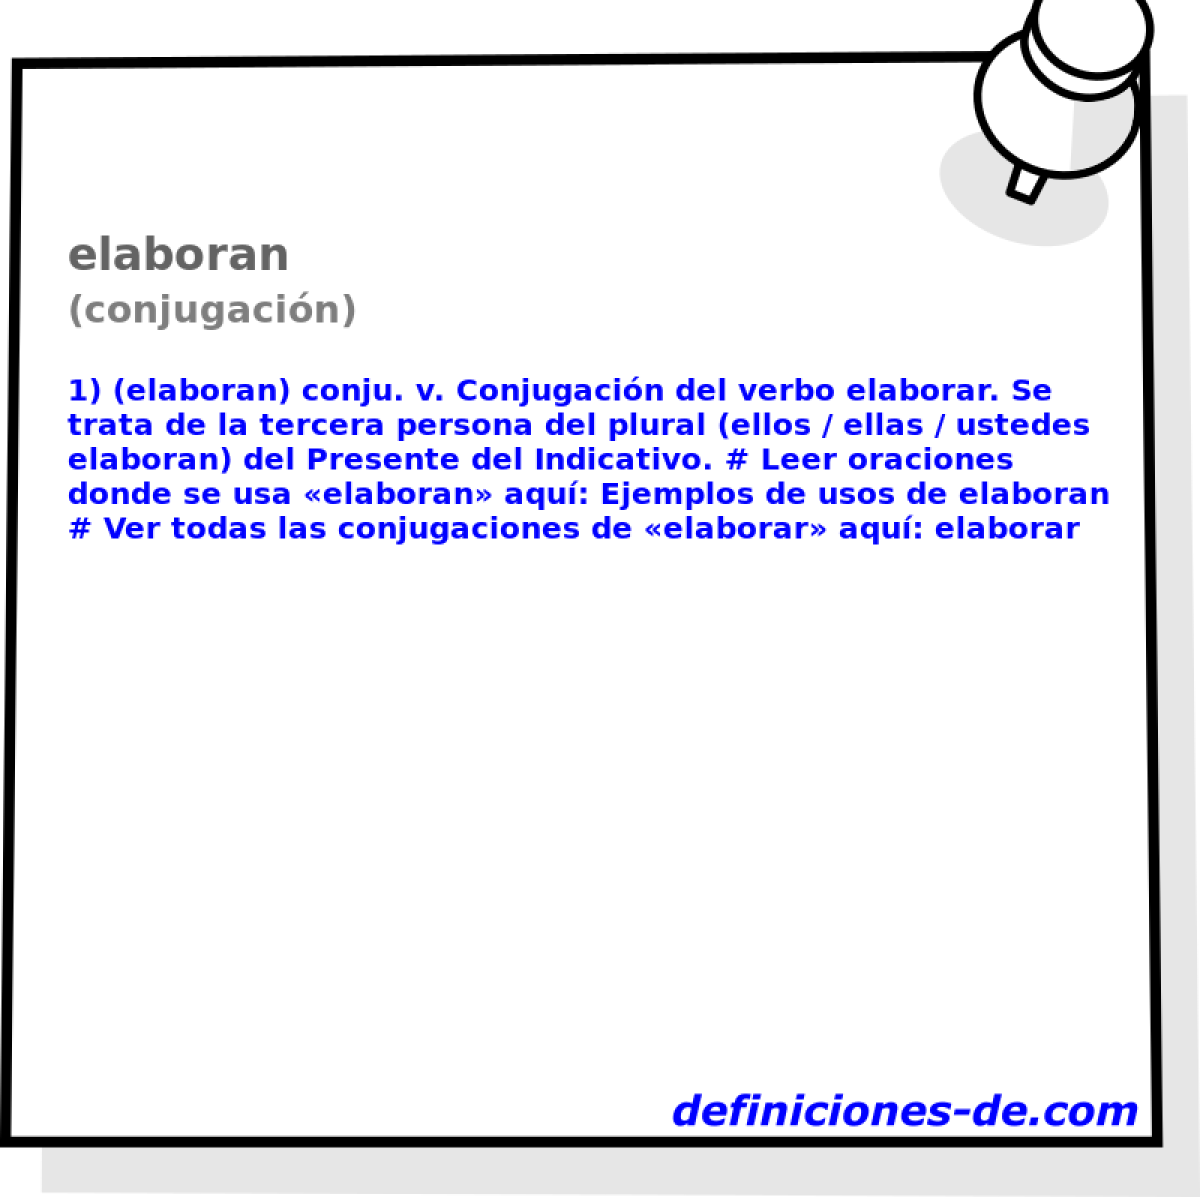 elaboran (conjugacin)